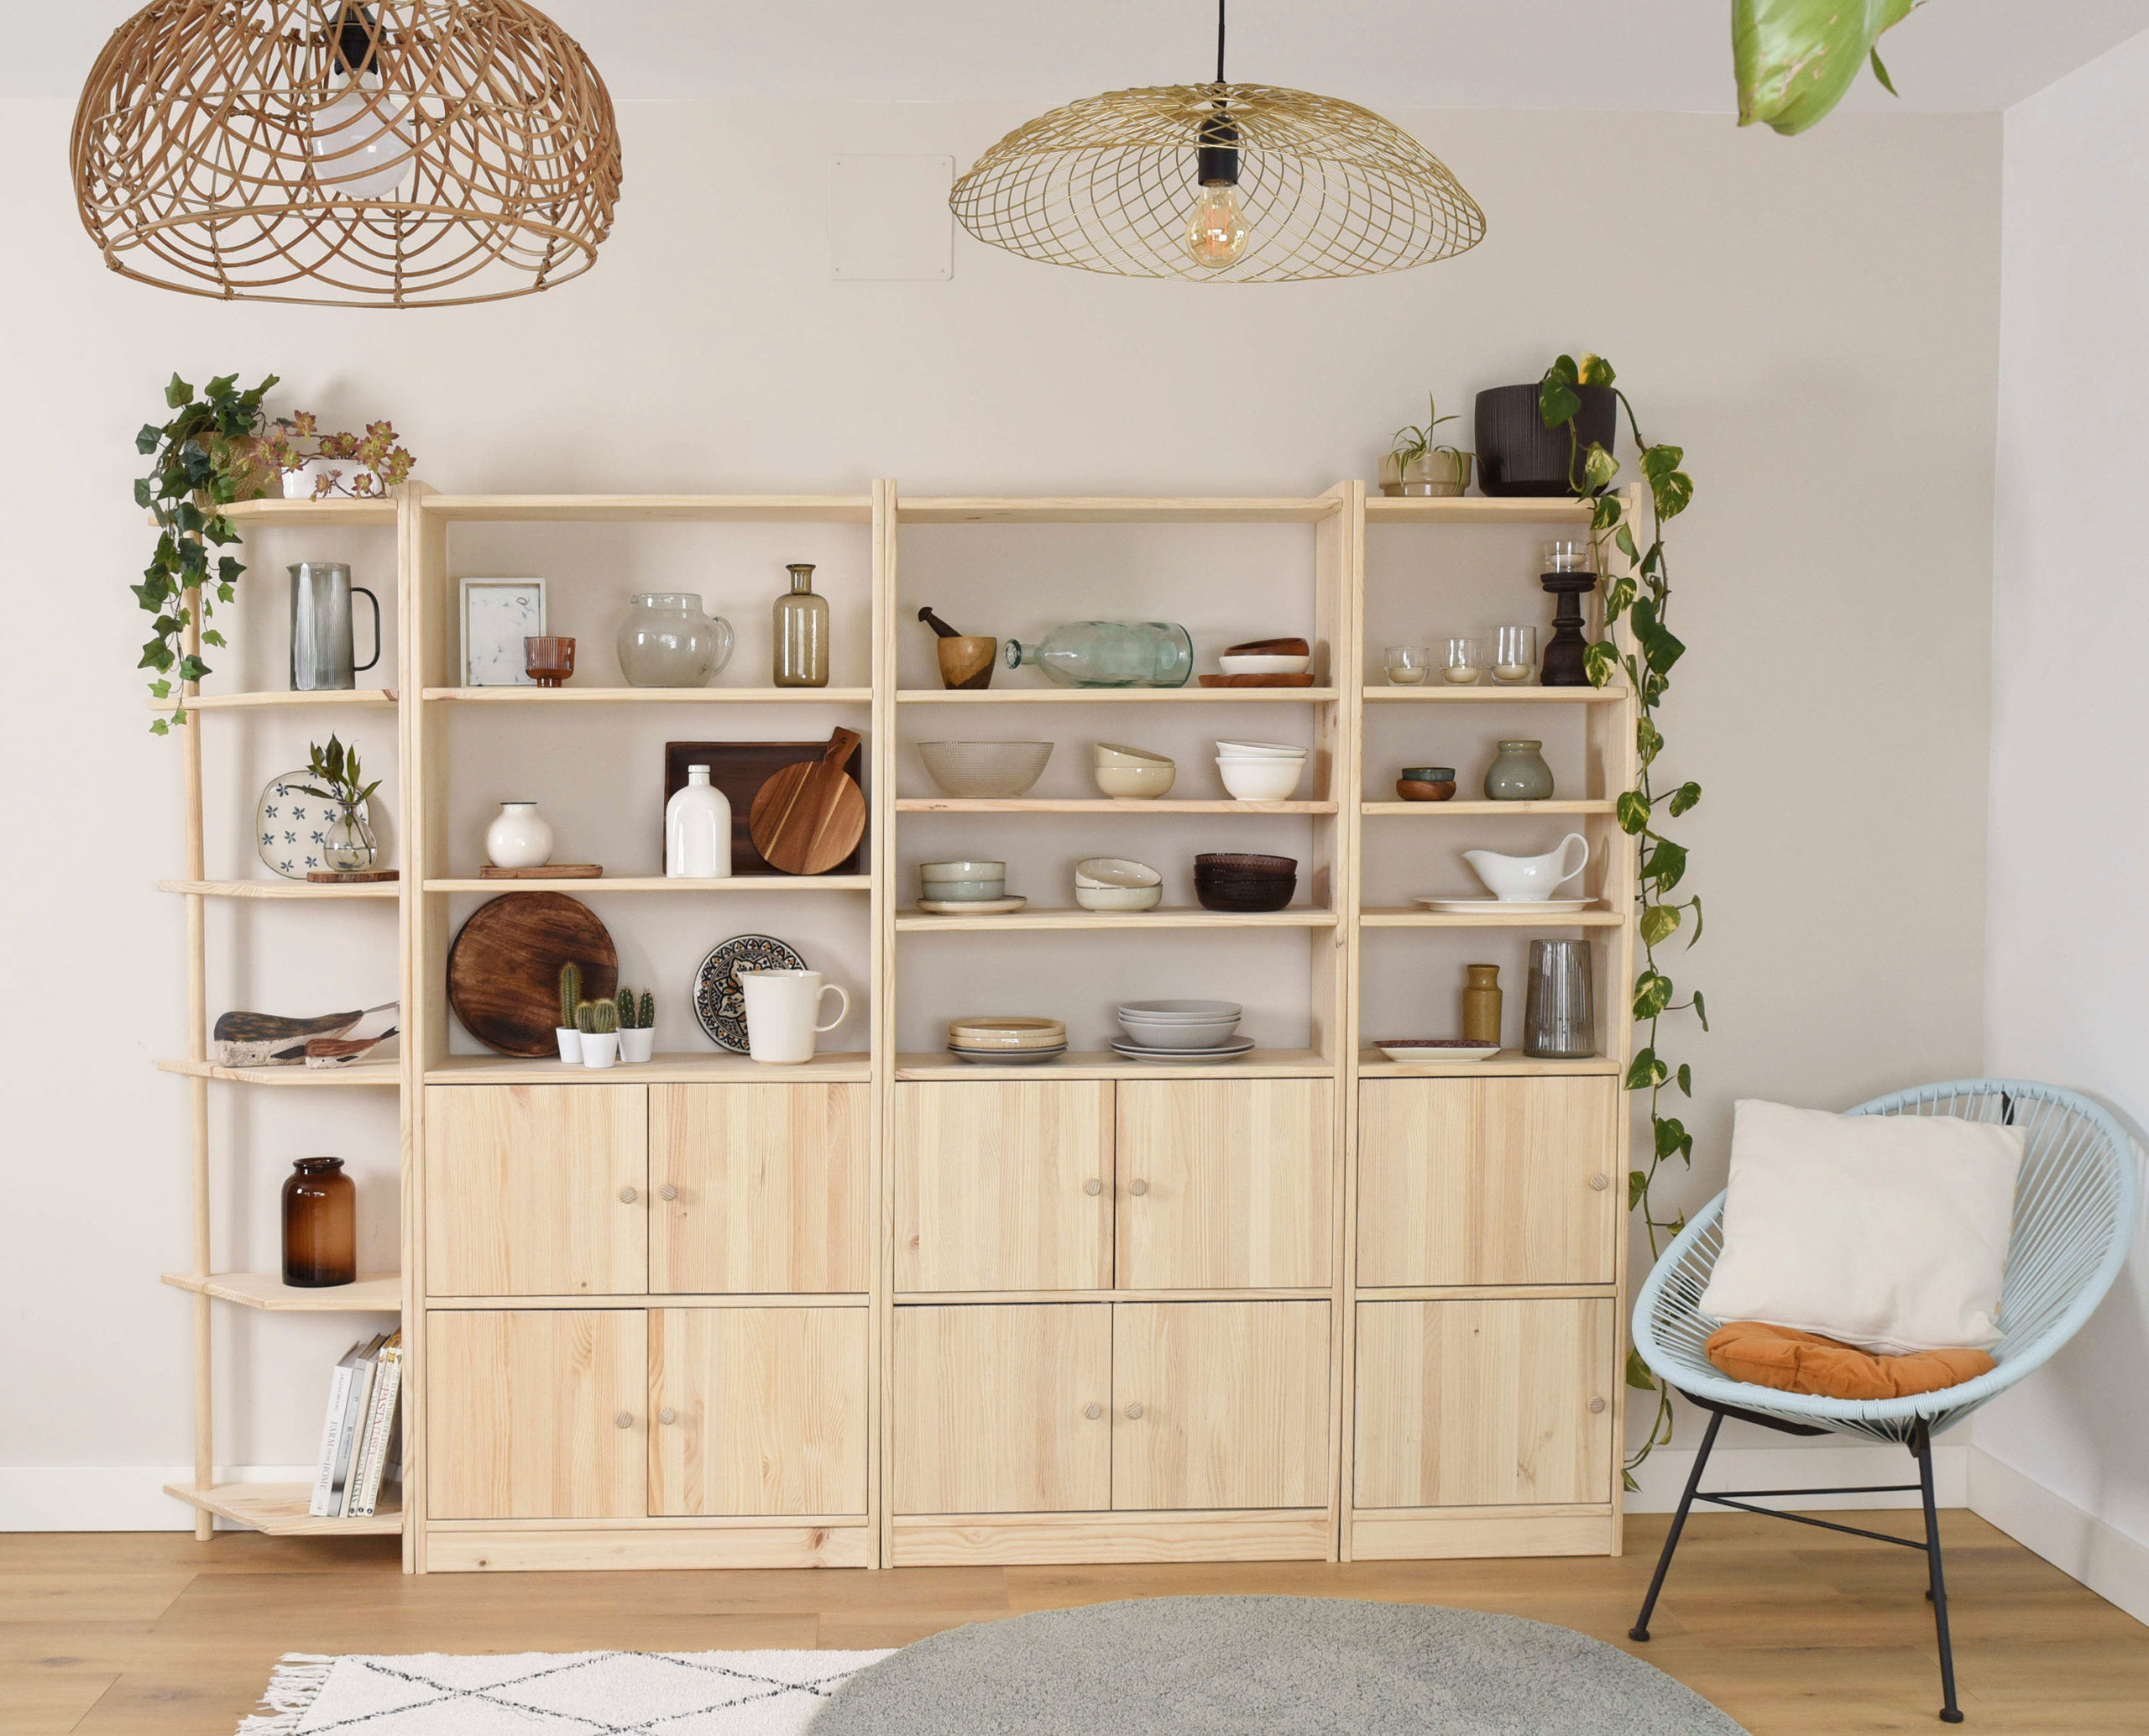 Nuevos muebles ecológicos con madera de origen local